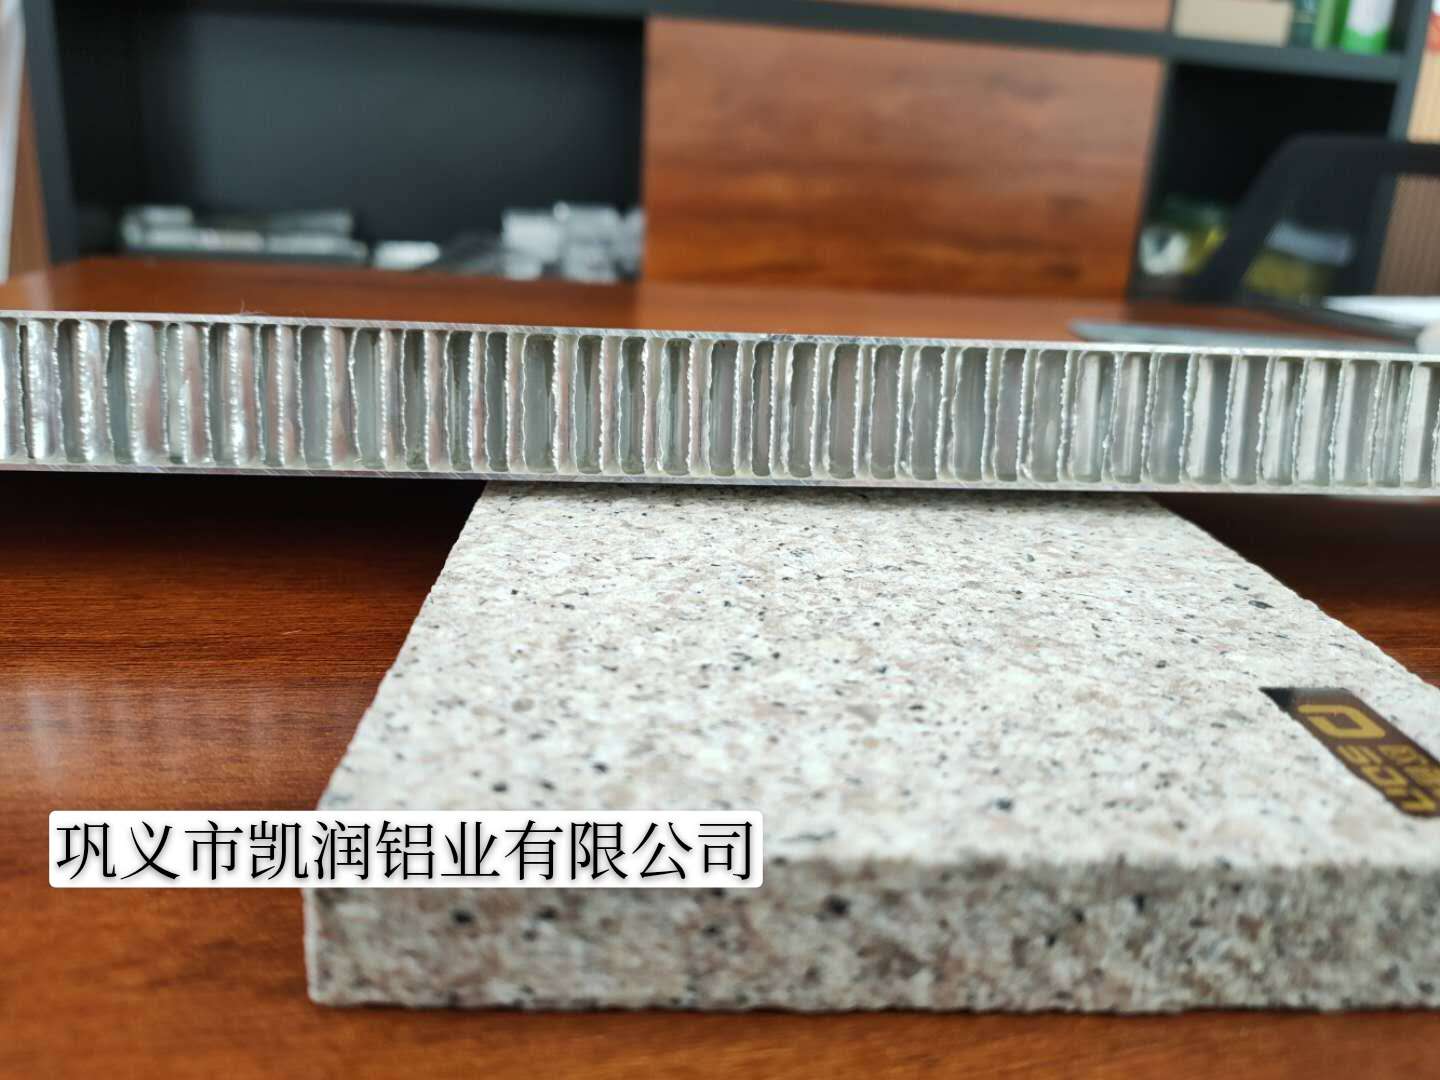 铝蜂窝板铝蜂窝板石材铝蜂窝板家具蜂窝板精选厂家厂家直销示例图7